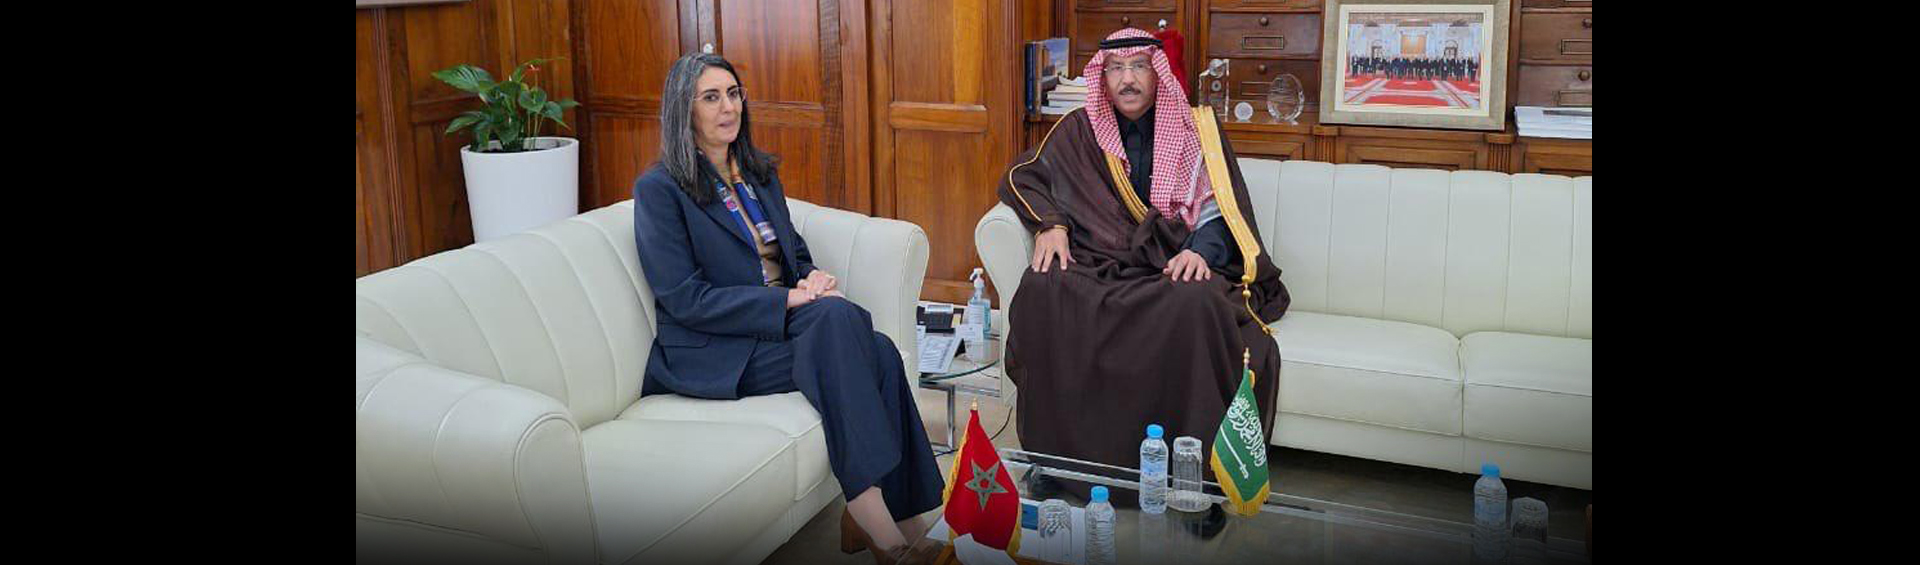 وزيرة الاقتصاد والمالية تستقبل سعادة الدكتور سامي بن عبد الله بن عثمان الصالح، السفير المفوض فوق العادة  للمملكة العربية السعودية بالمغرب